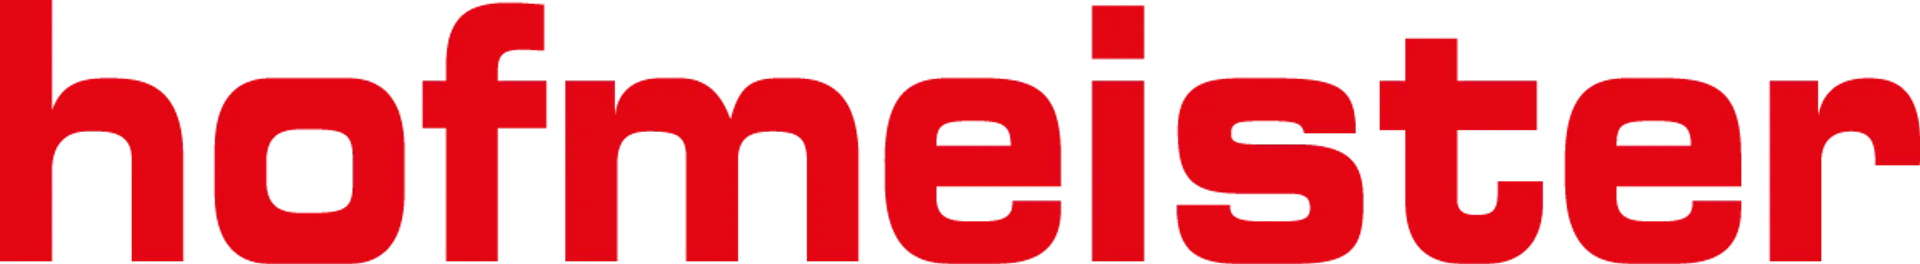 HOFMEISTER logo